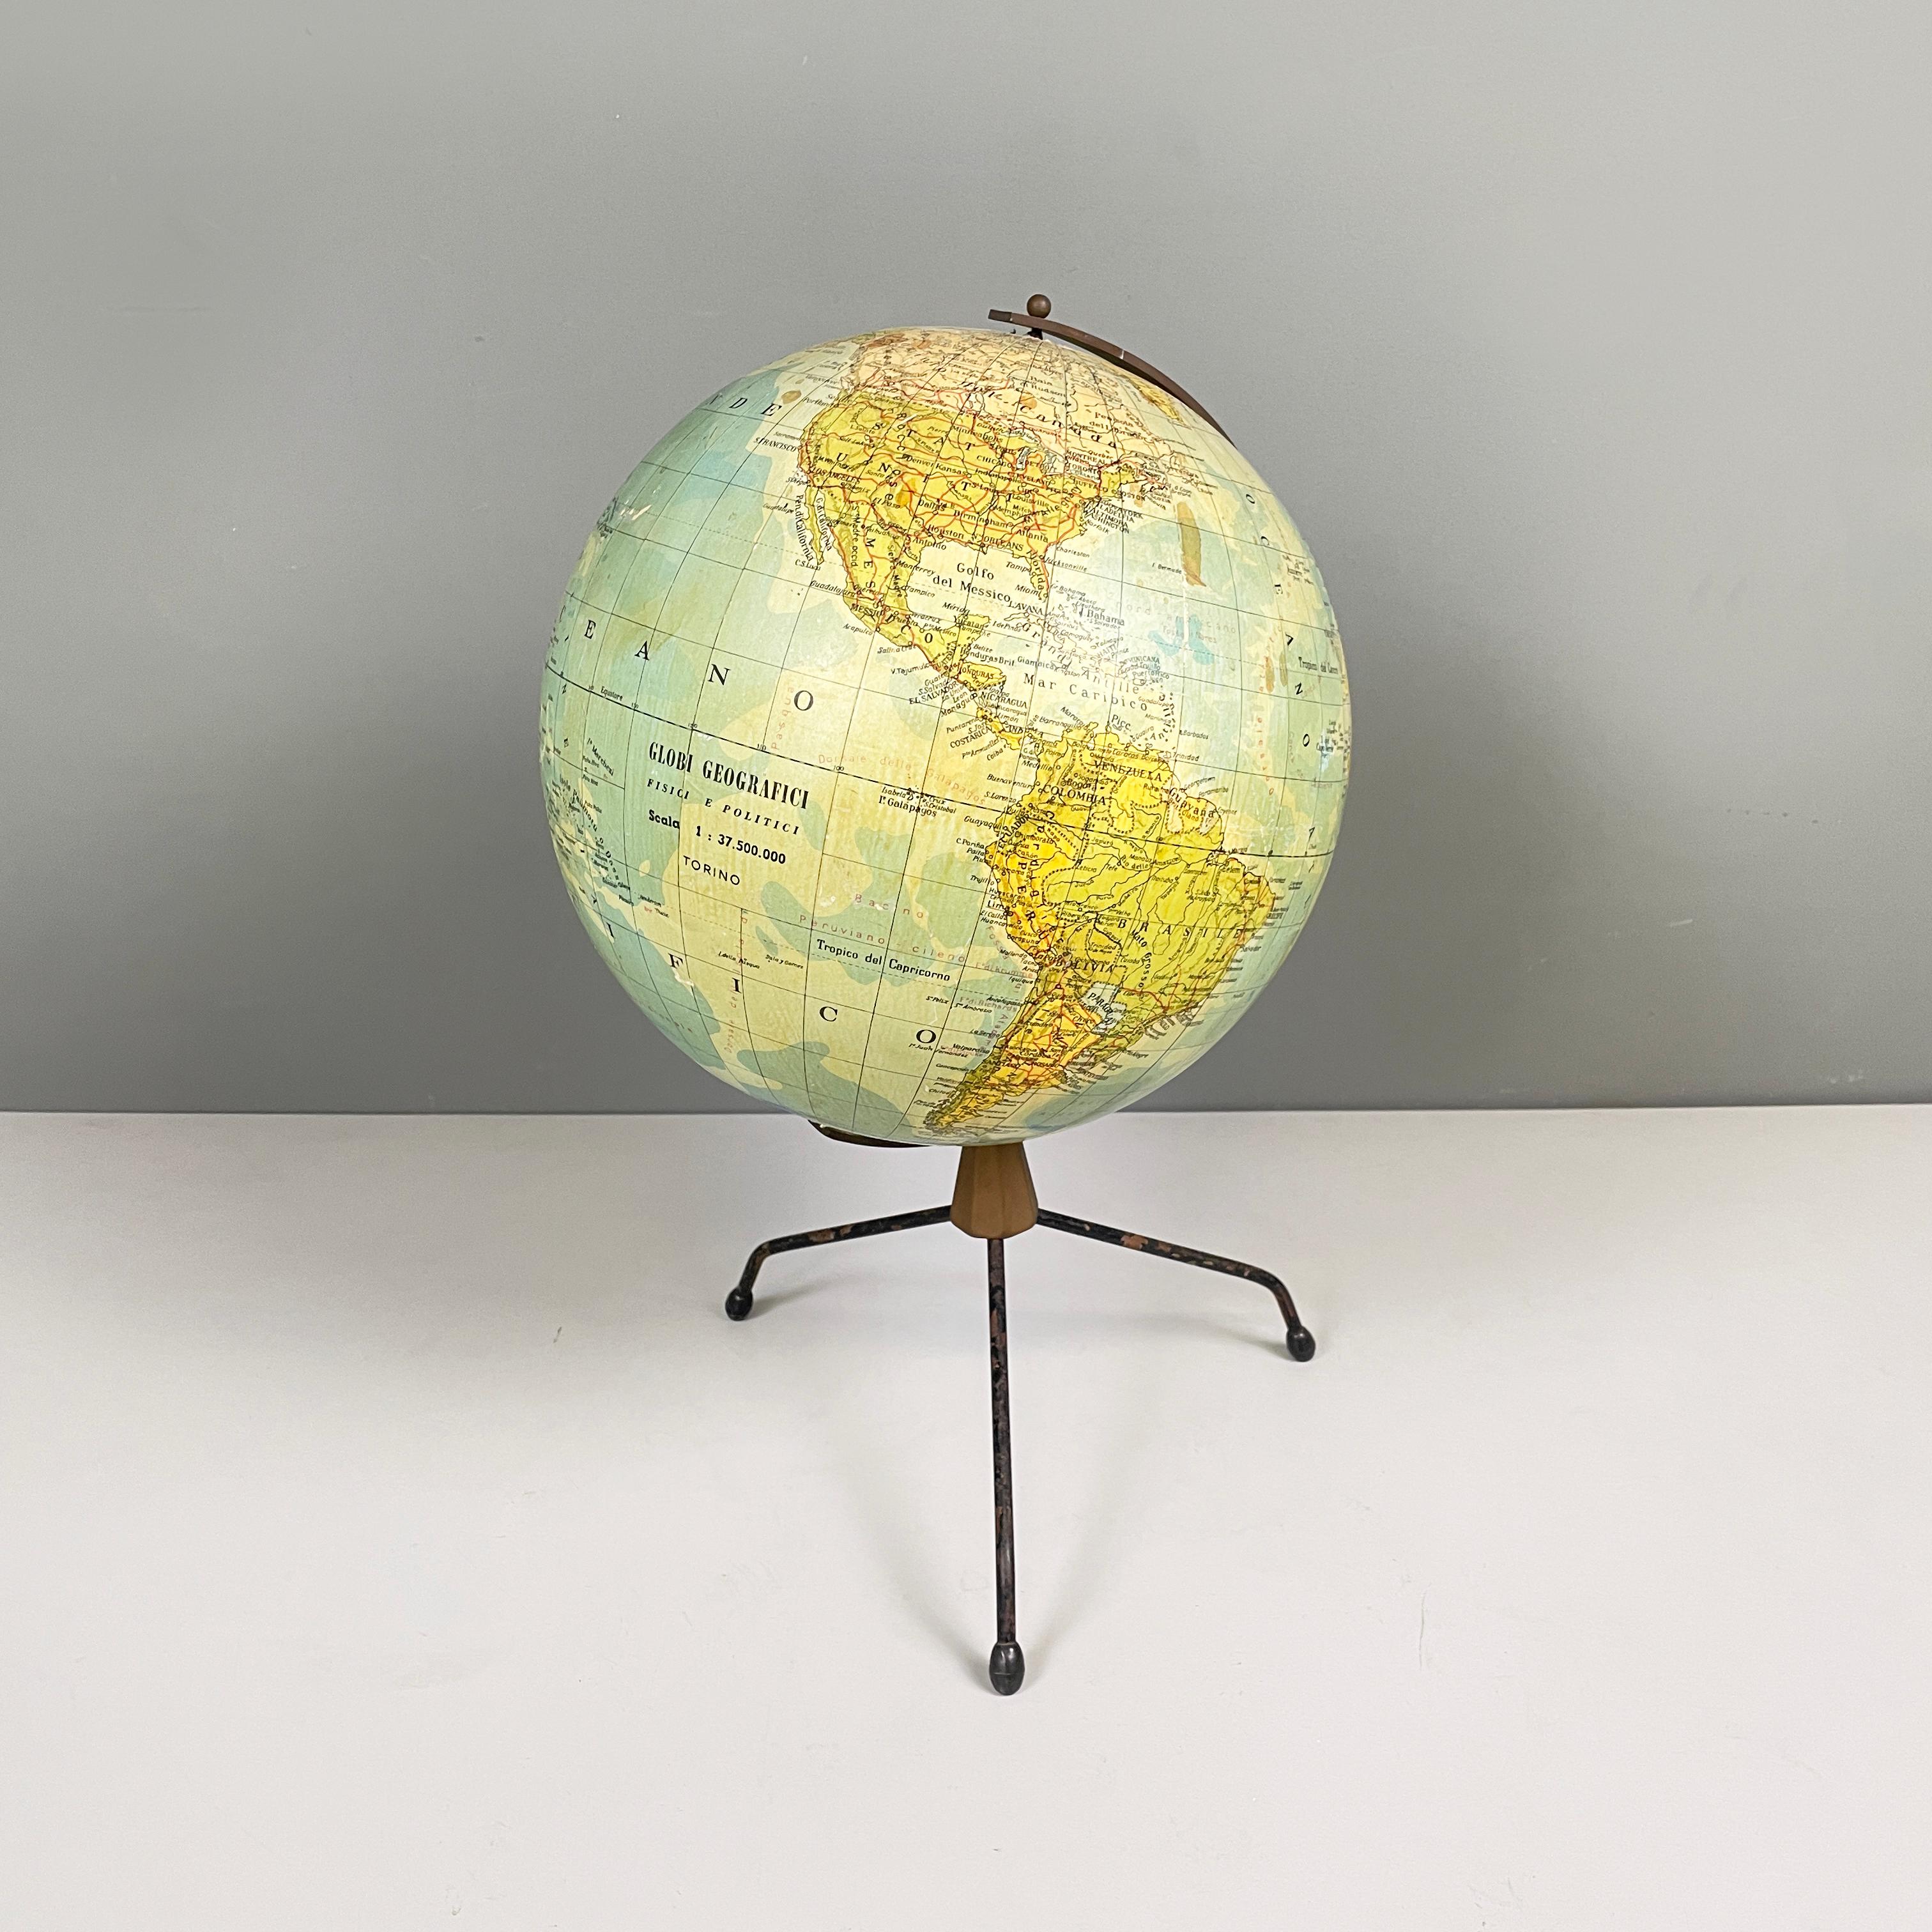 Table moderne italienne, mappemonde en métal, années 1960
Carte du monde sur table avec structure métallique. Le globe tourne grâce aux axes de la structure métallique incurvée. La base a 3 pieds en tige métallique peinte en noir avec des pieds